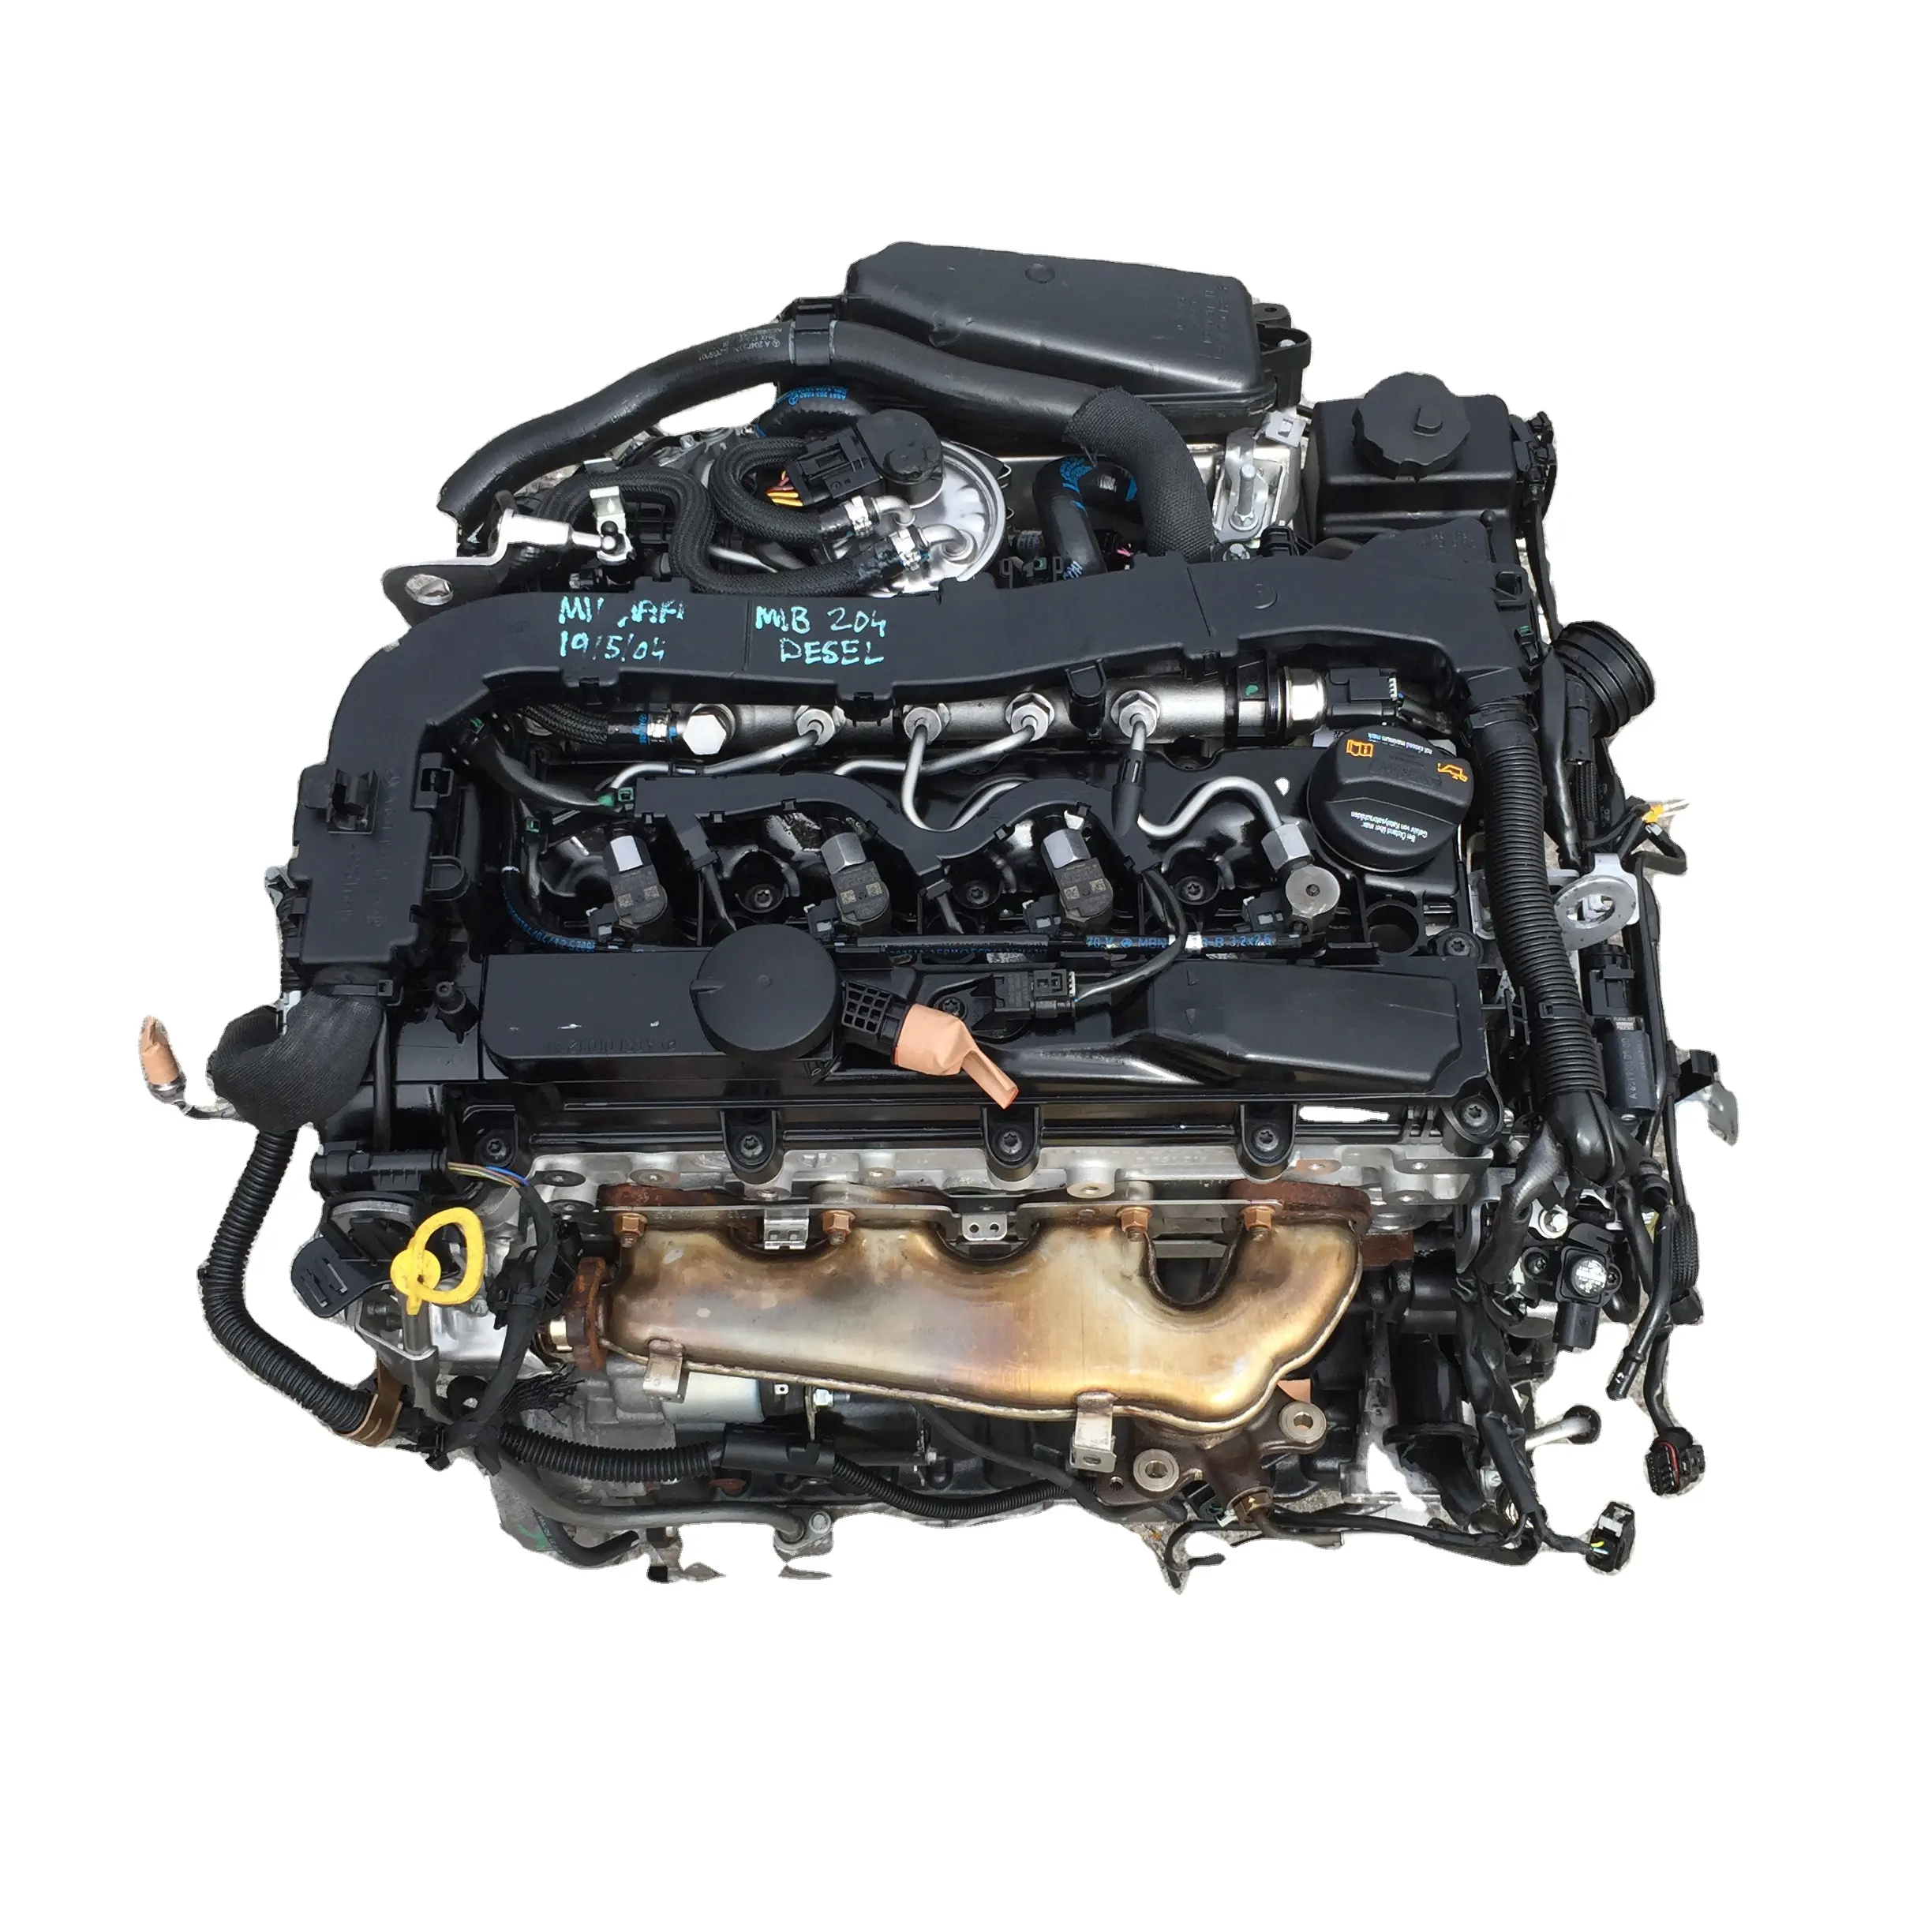 محرك أصلي مستعمل للبيع بالجملة لمحرك مرسيدس بنز W166 Sprinter 2.1L wigine